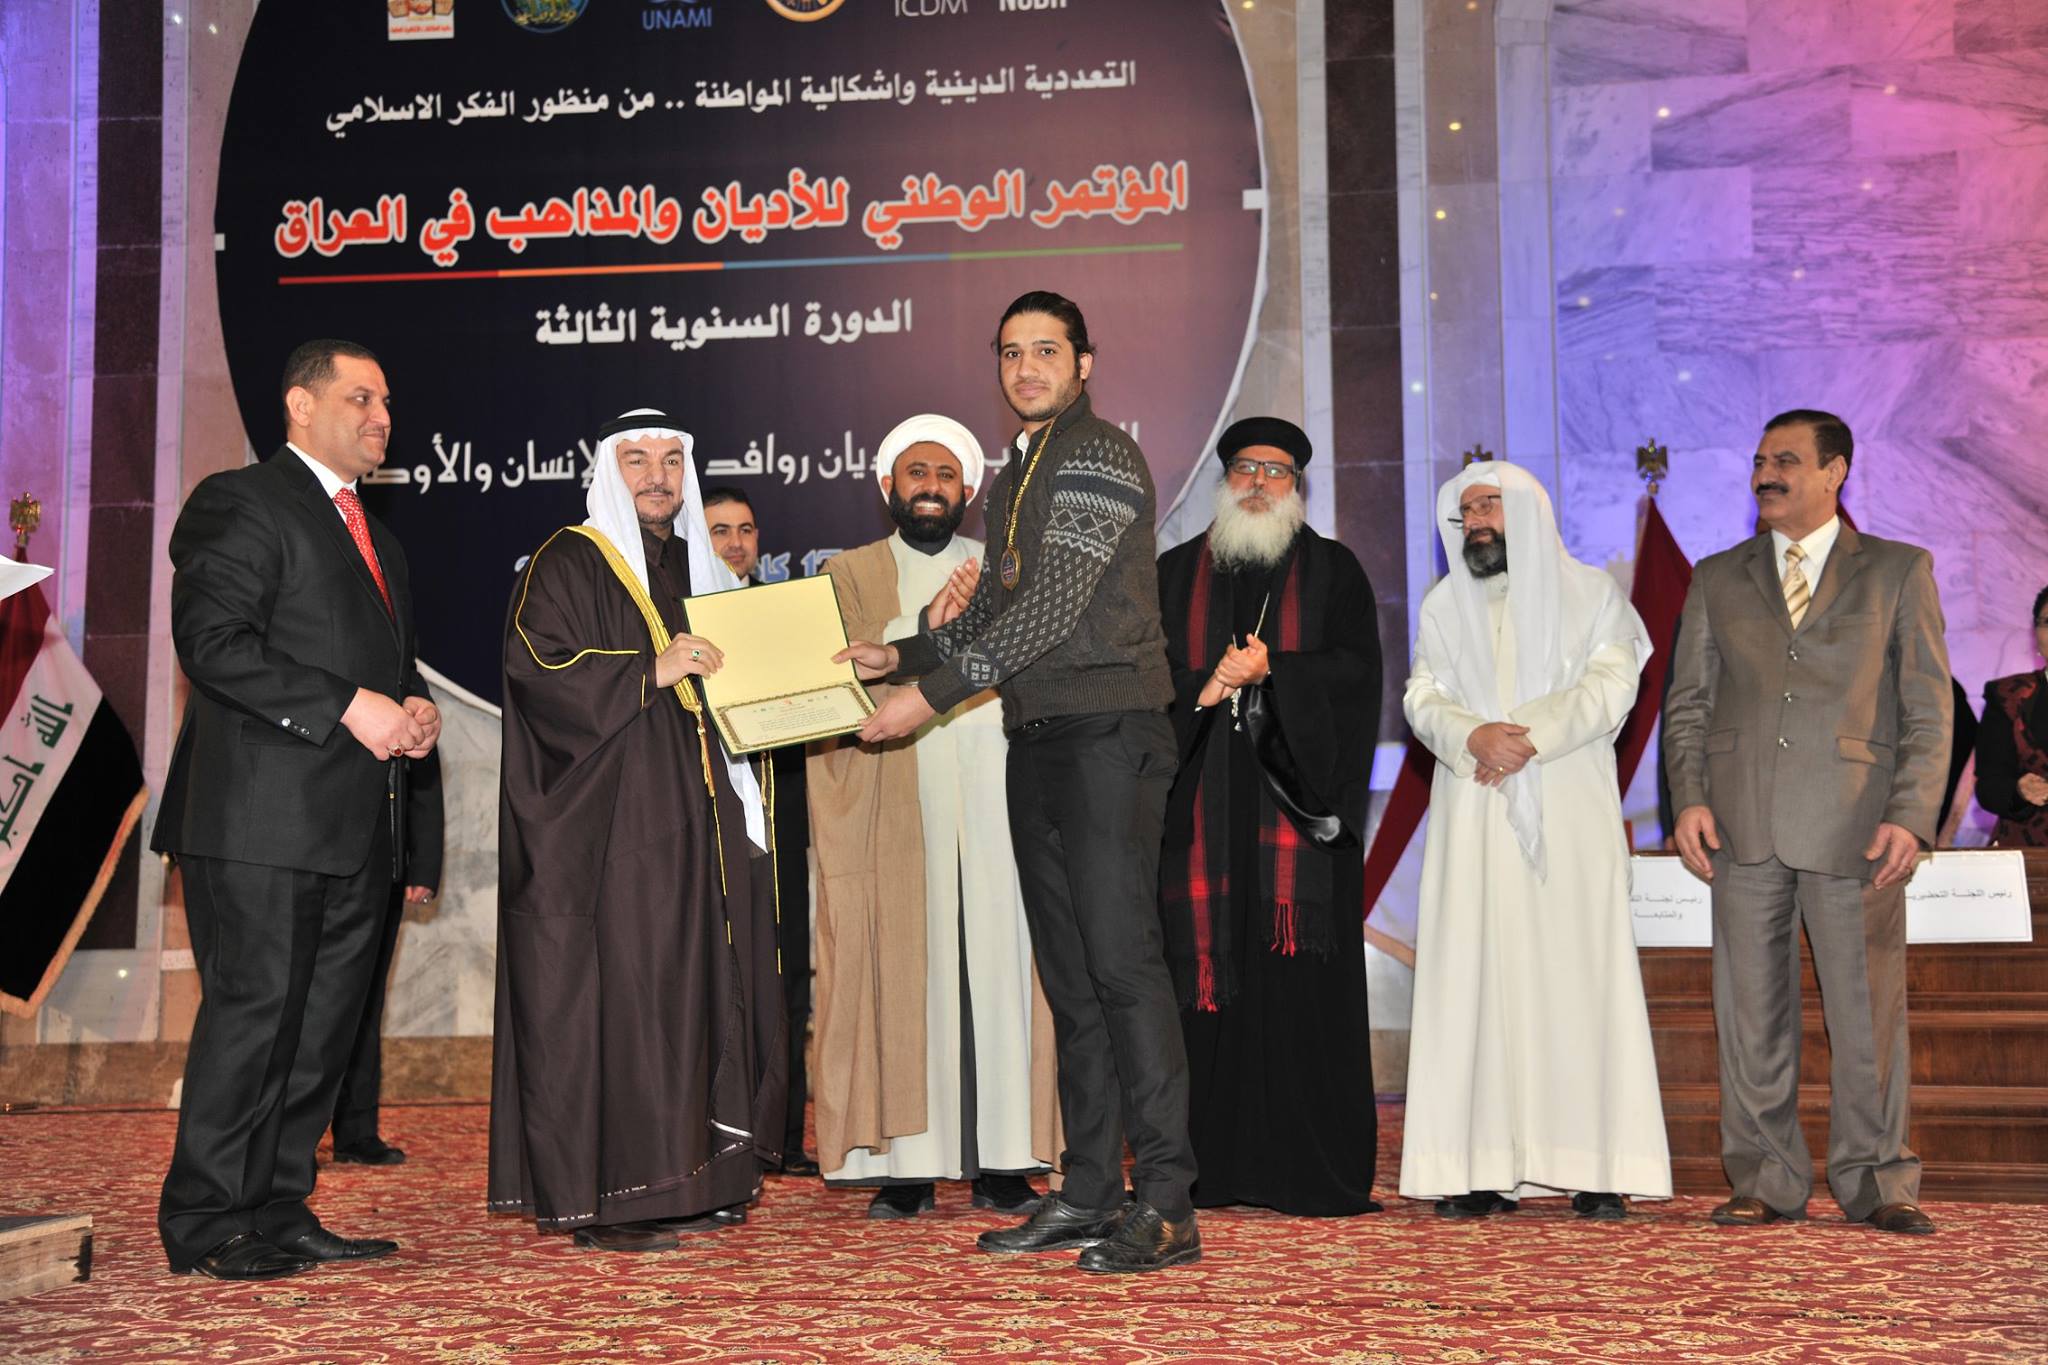 ديوان الوقف السني يحتضن المؤتمر الوطني للاديان والمذاهب في العراق بنسخته الثالثة (2)